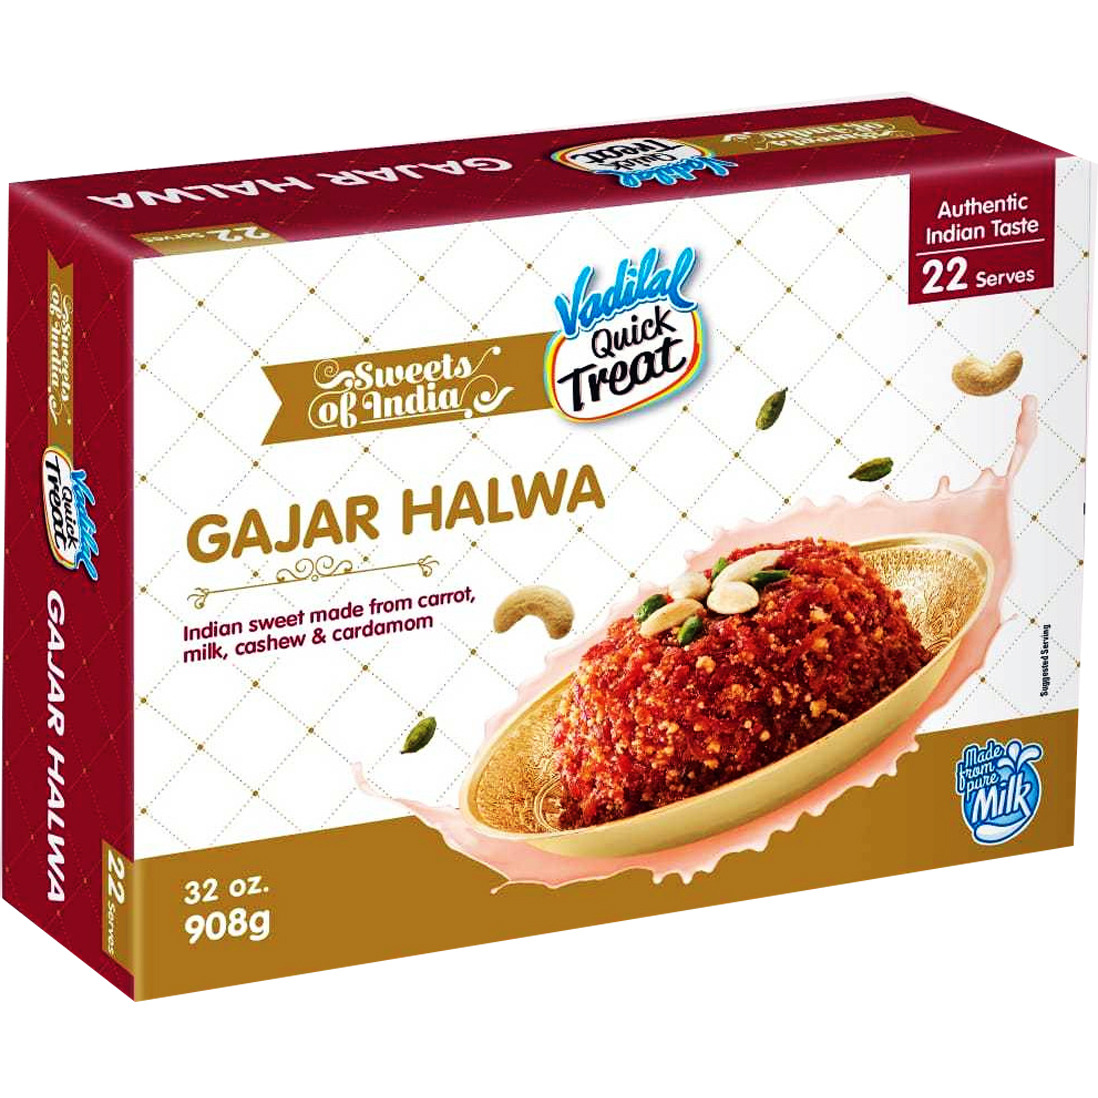 Vadilal Quick treat Gajar Halwa - 32 Oz (908 Gm)